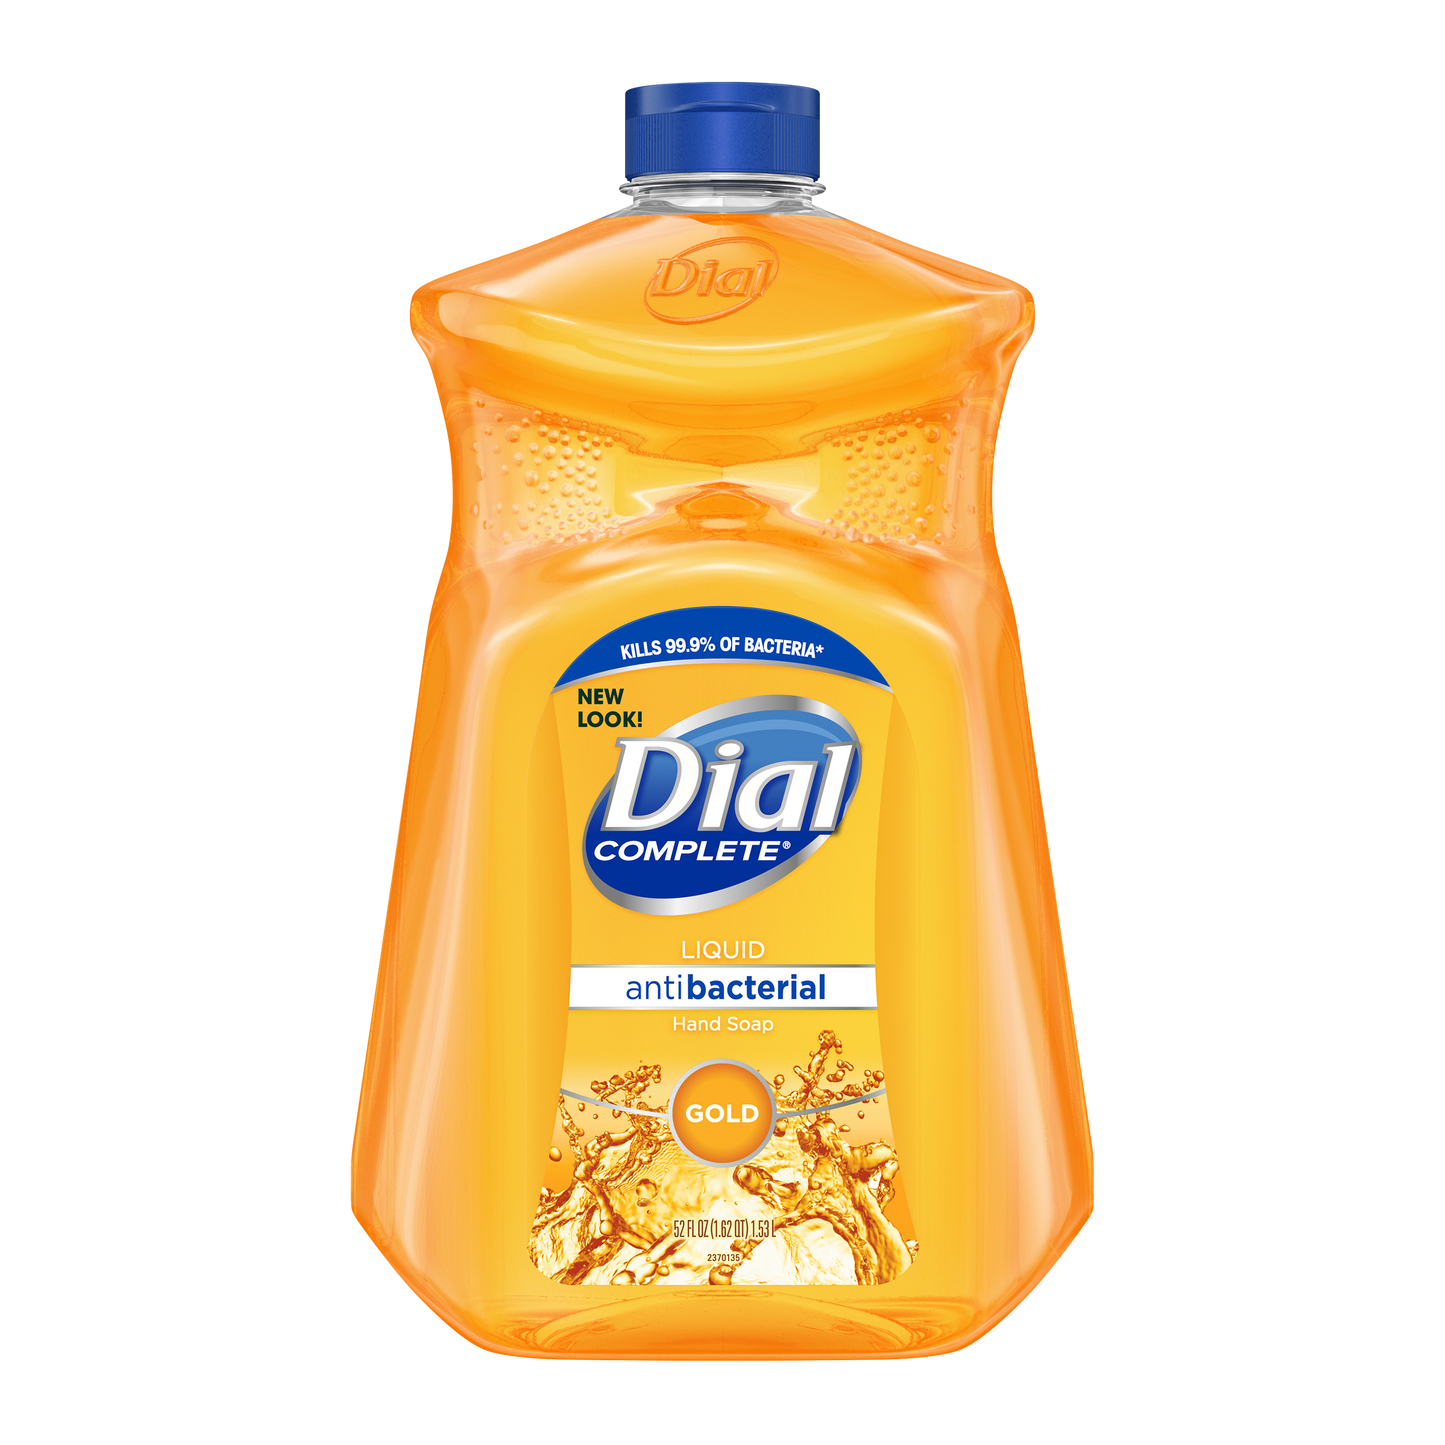 Dial Complete Liquid Antibacterial Hand Soap Gold 52 oz 1.53 L REFILL